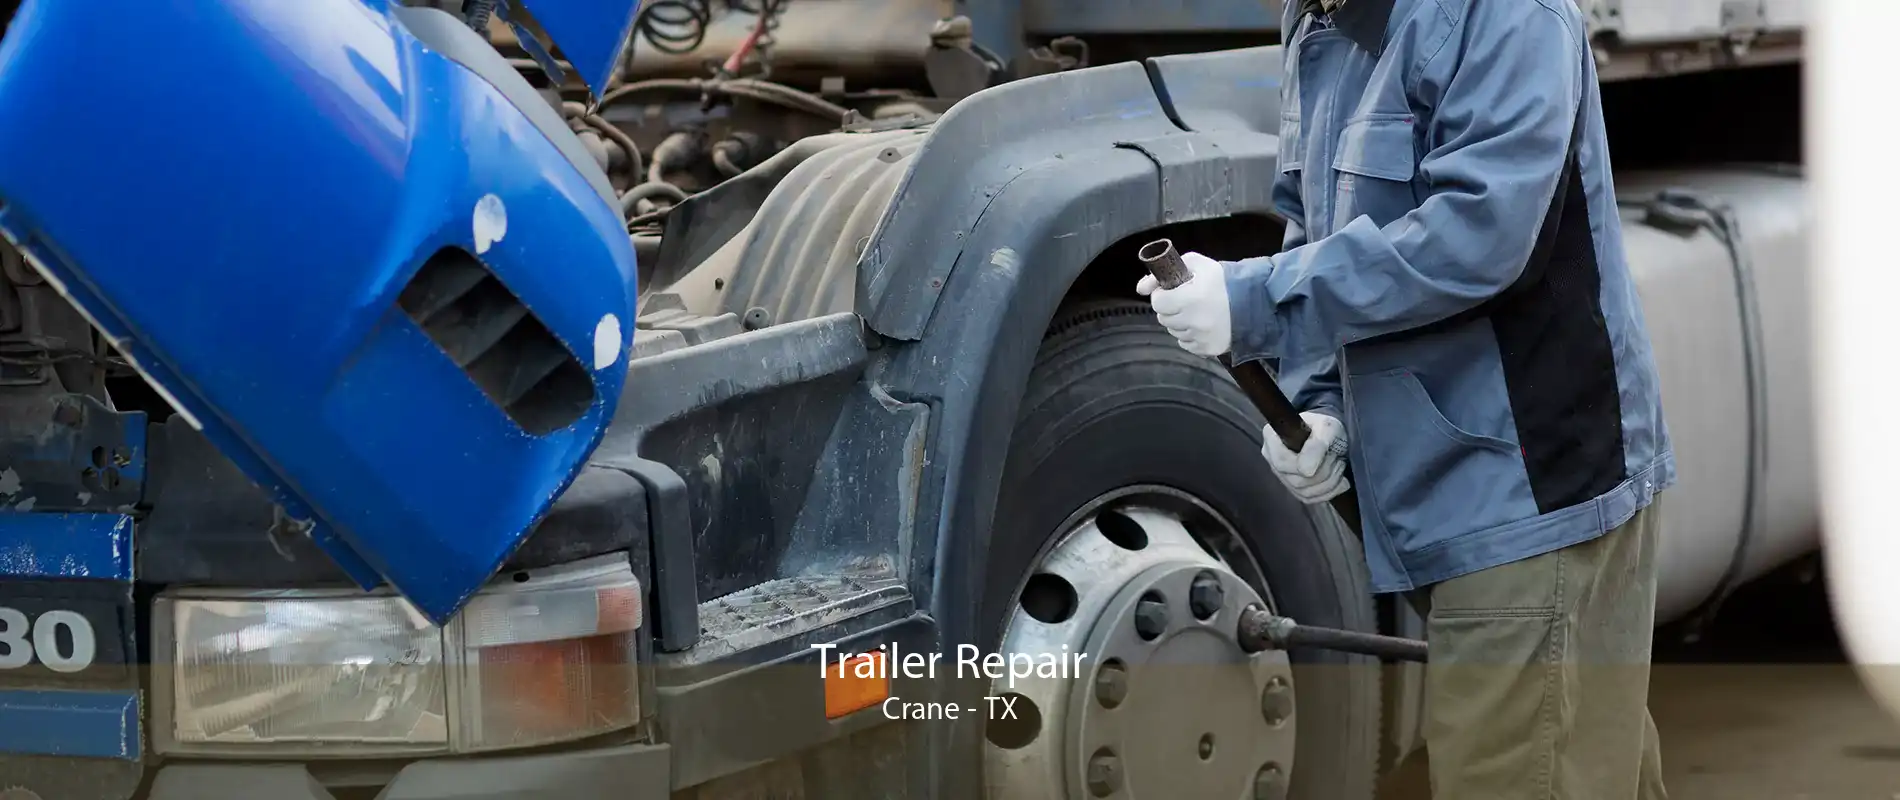 Trailer Repair Crane - TX